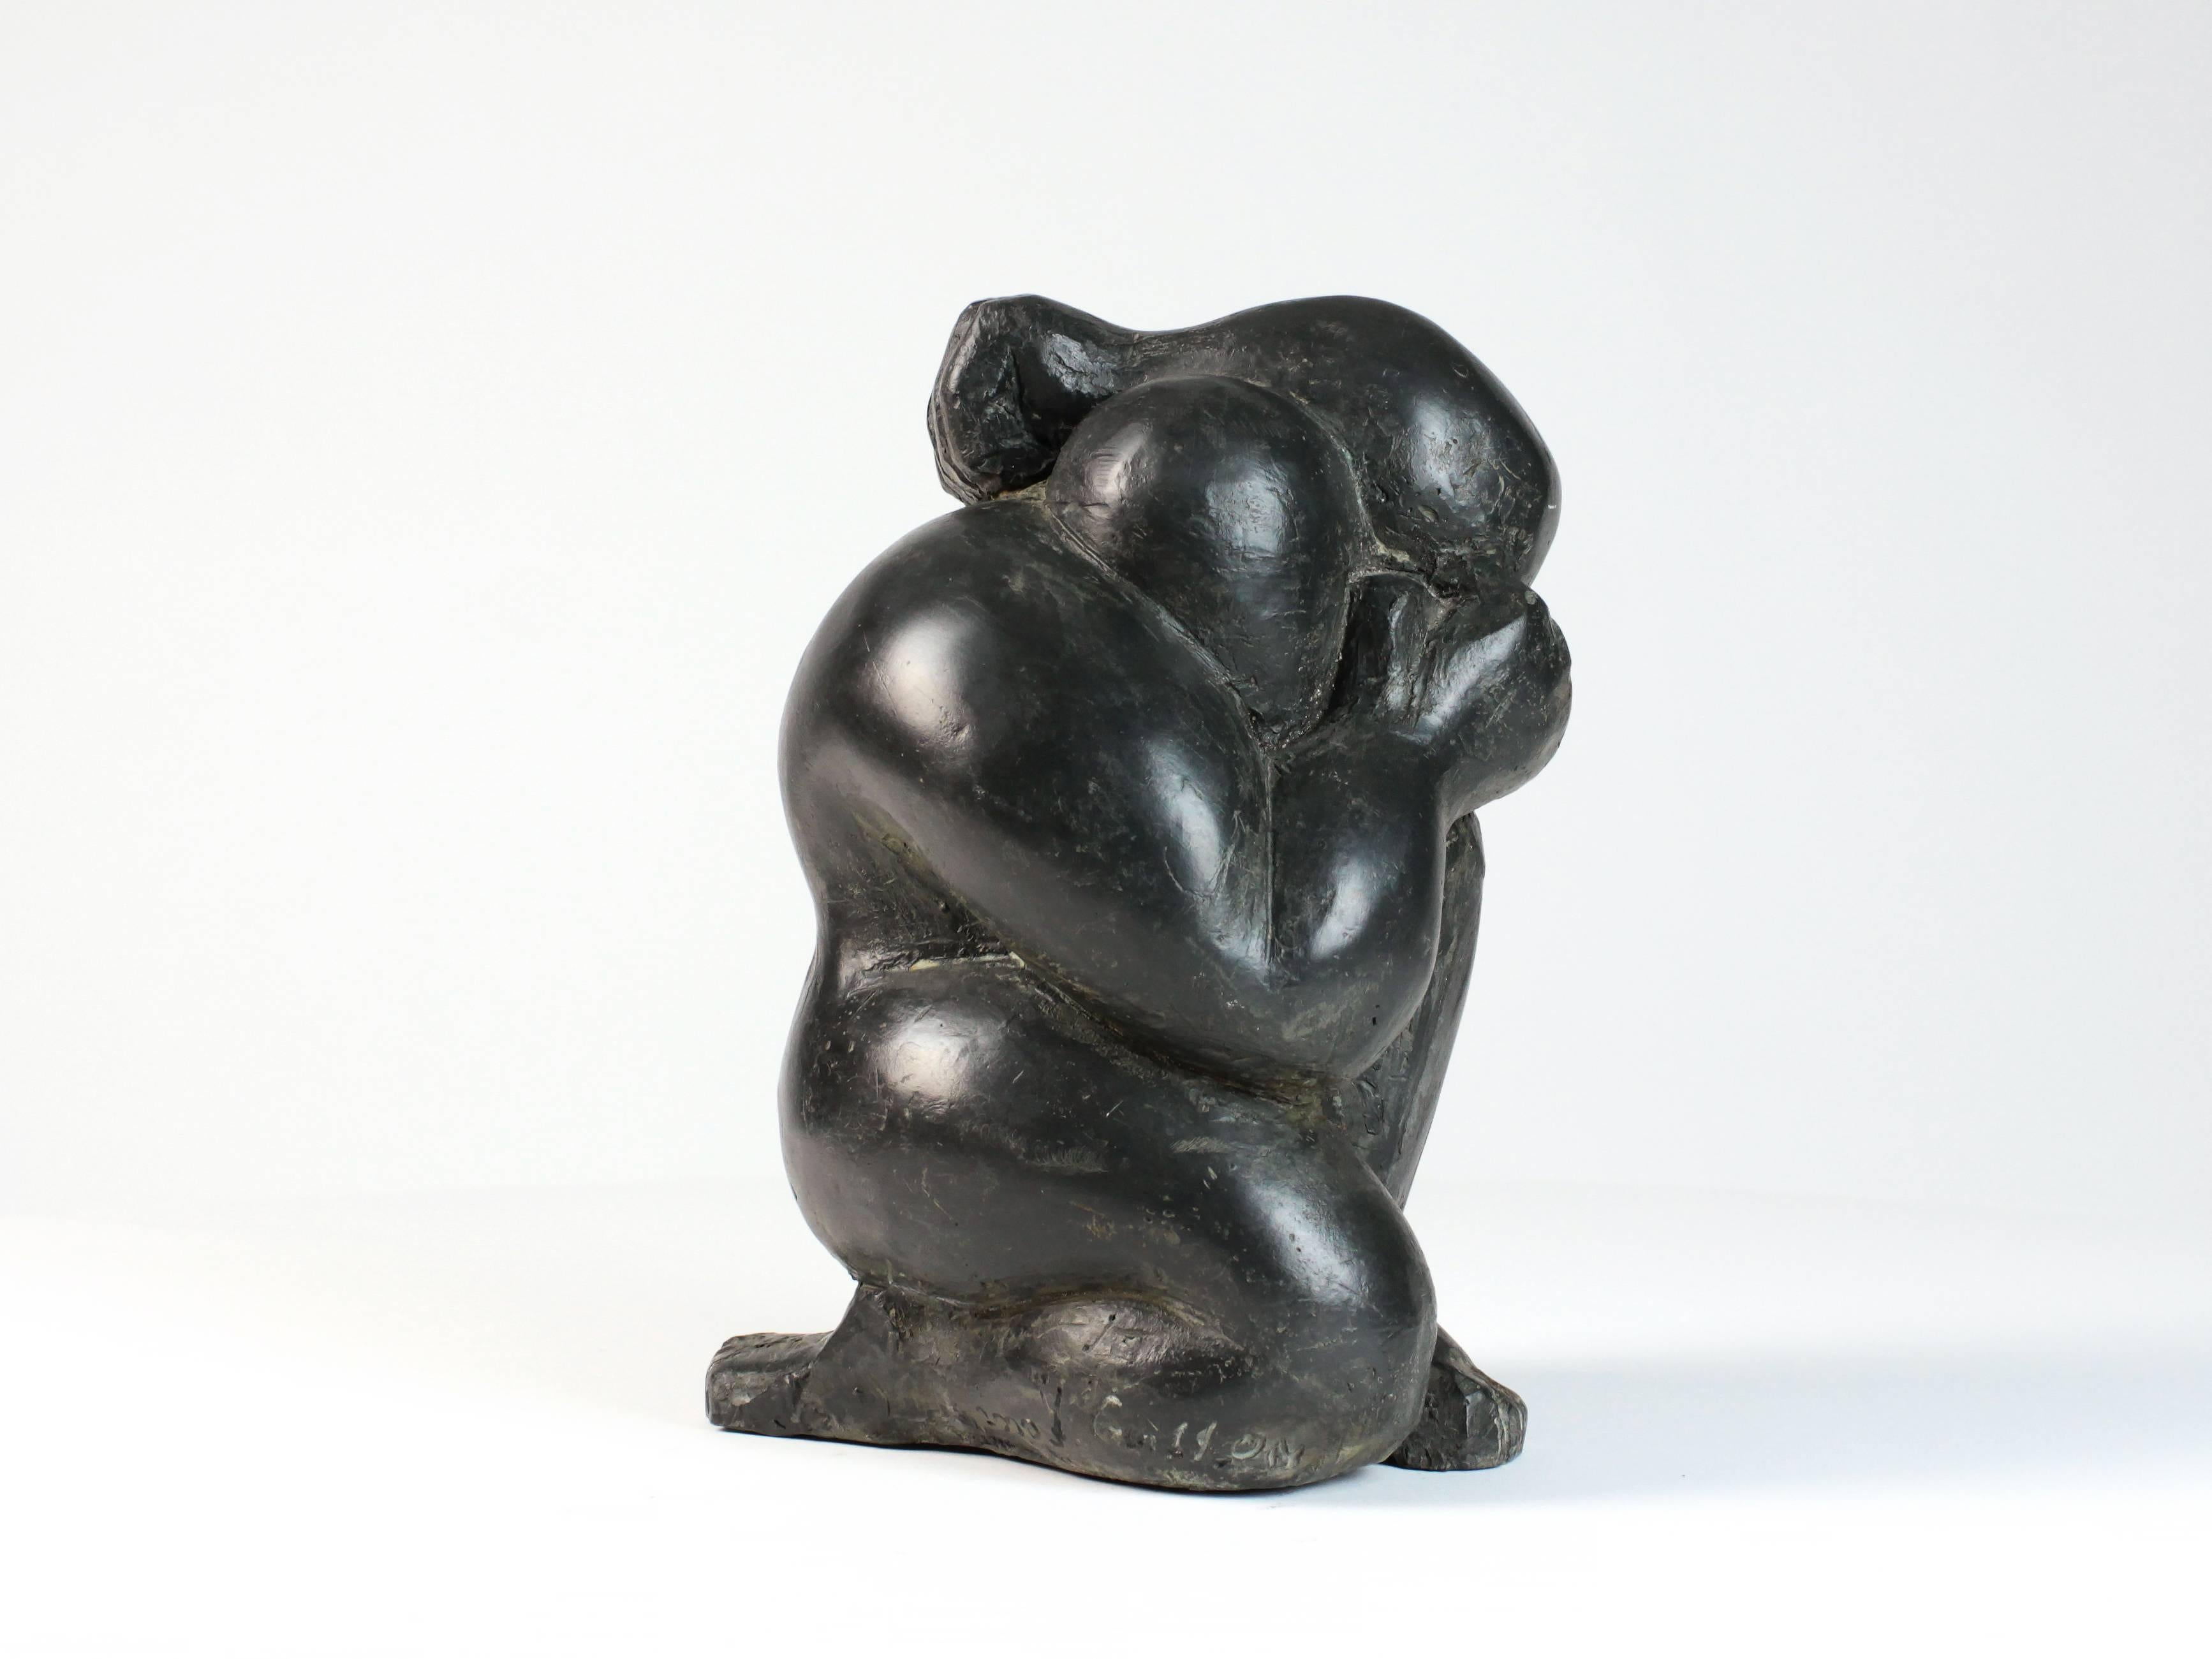 Artistics III est une sculpture en bronze de l'artiste contemporain Yann Guillon, dont les dimensions sont de 26 × 16 × 18 cm (10,2 × 6,3 × 7,1 in). 
La sculpture est signée et numérotée, elle fait partie d'une édition limitée à 8 exemplaires + 4